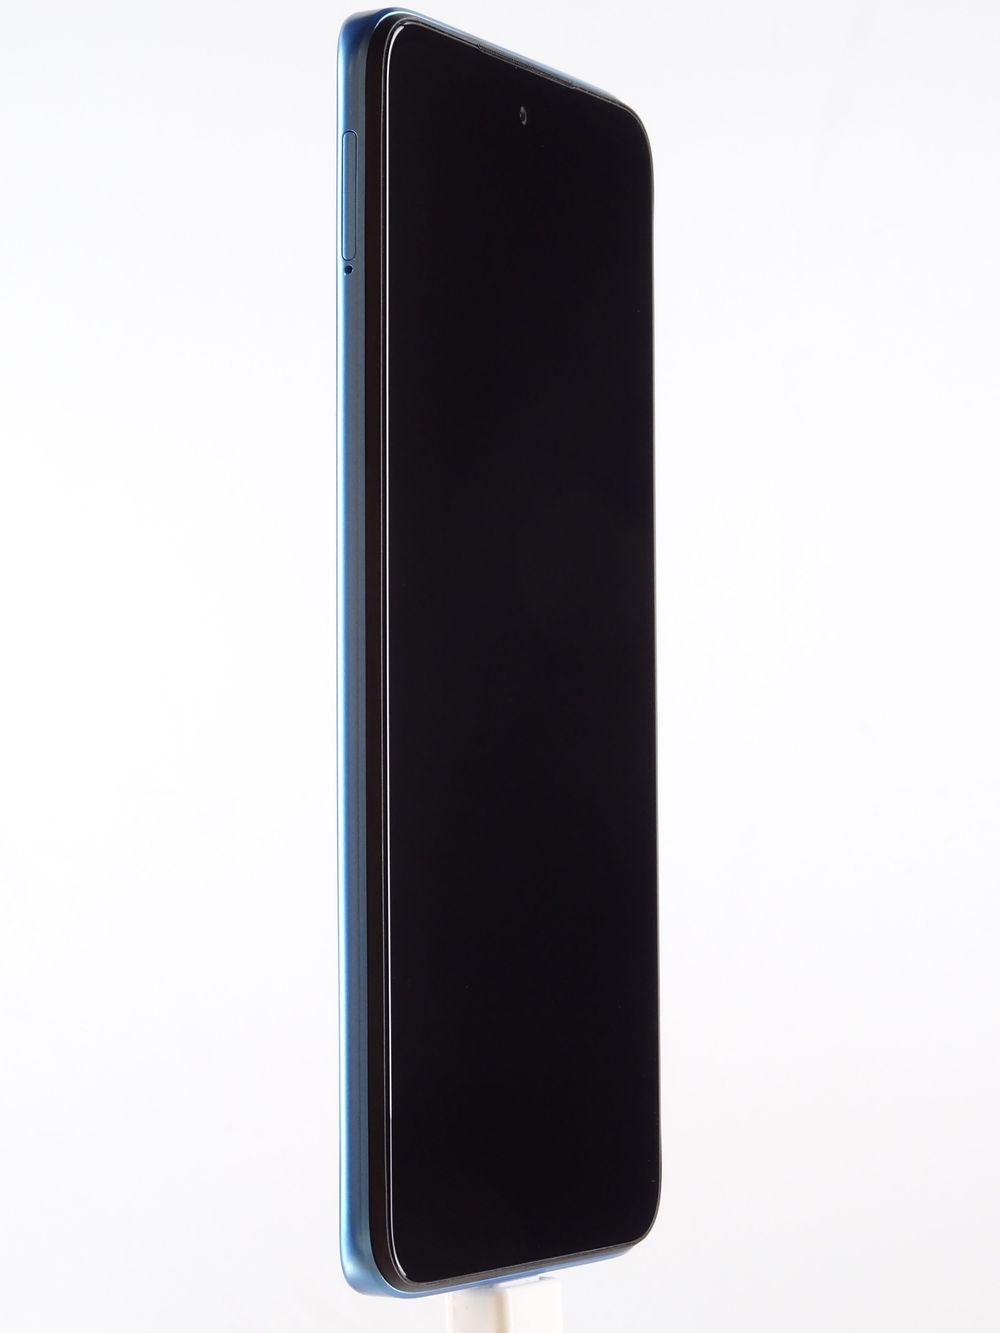 Telefon mobil Xiaomi Redmi 10, Sea Blue, 128 GB, Excelent